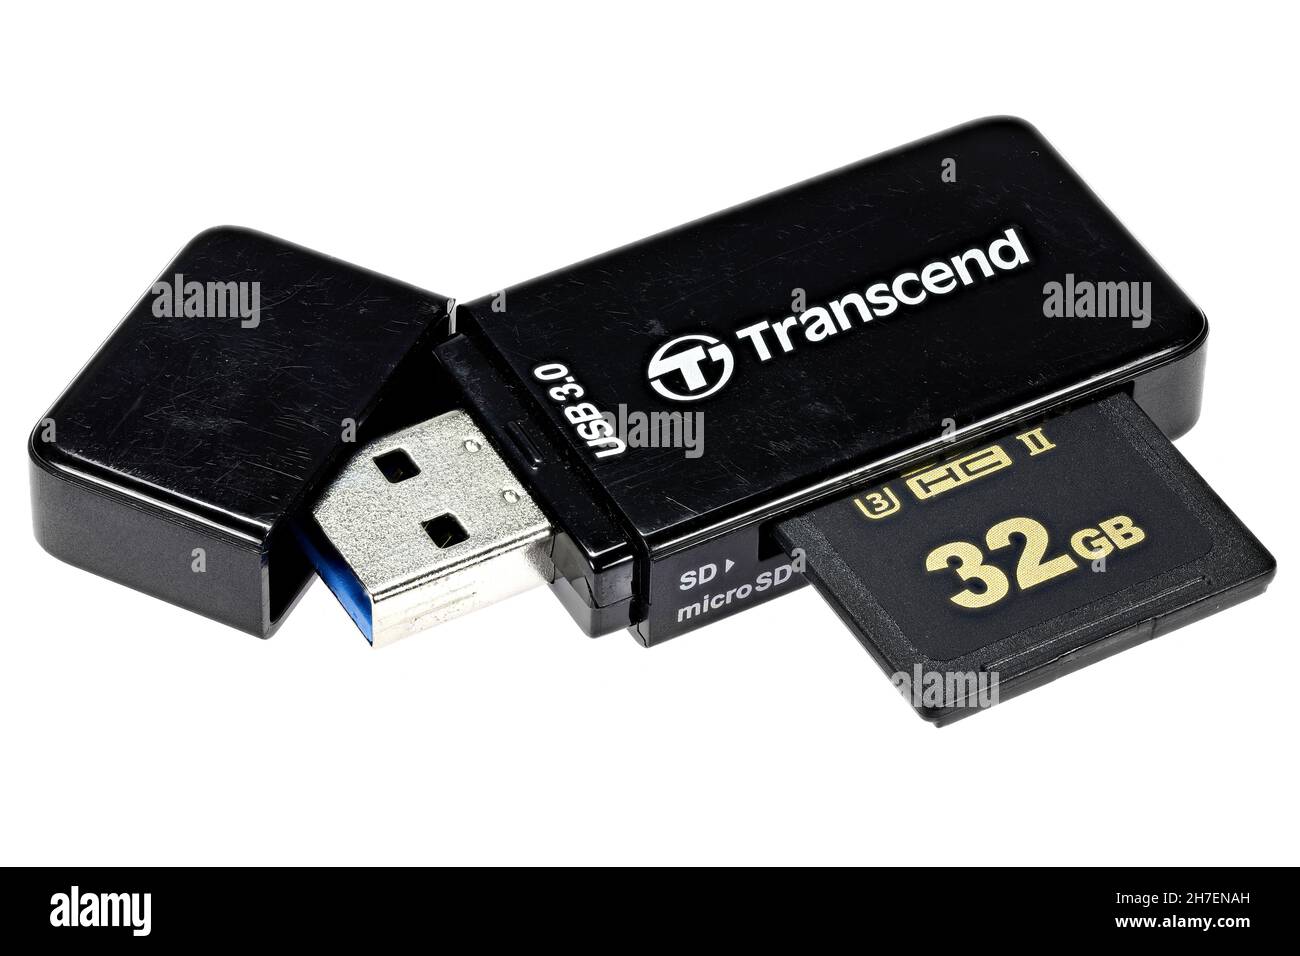 Lettore di schede SD USB 3.0 Transcend con scheda da 32 GB inserita isolata su sfondo bianco Foto Stock